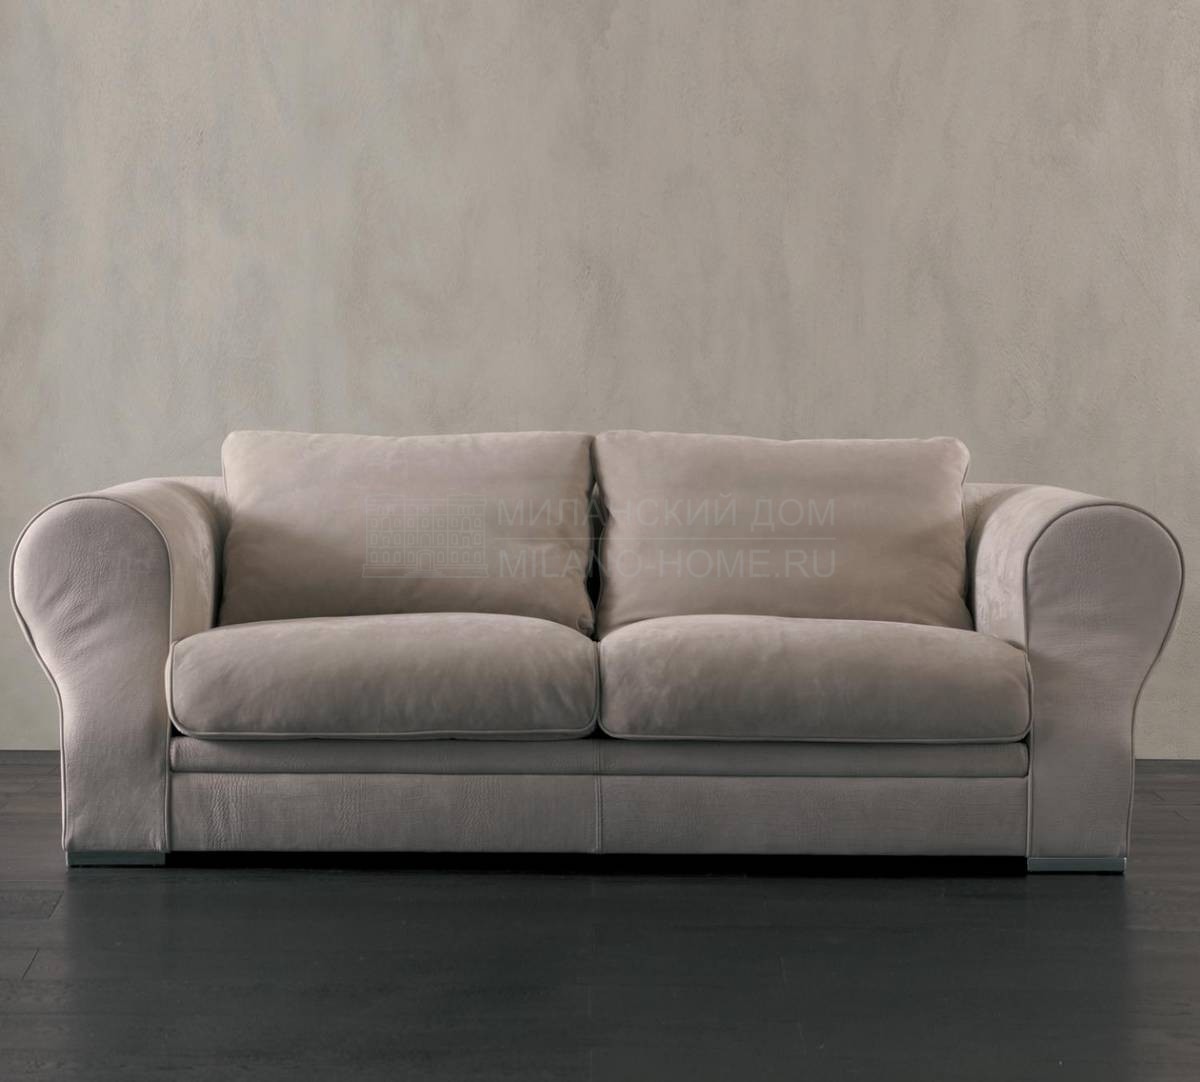 Прямой диван Otello/6043 из Италии фабрики RUGIANO